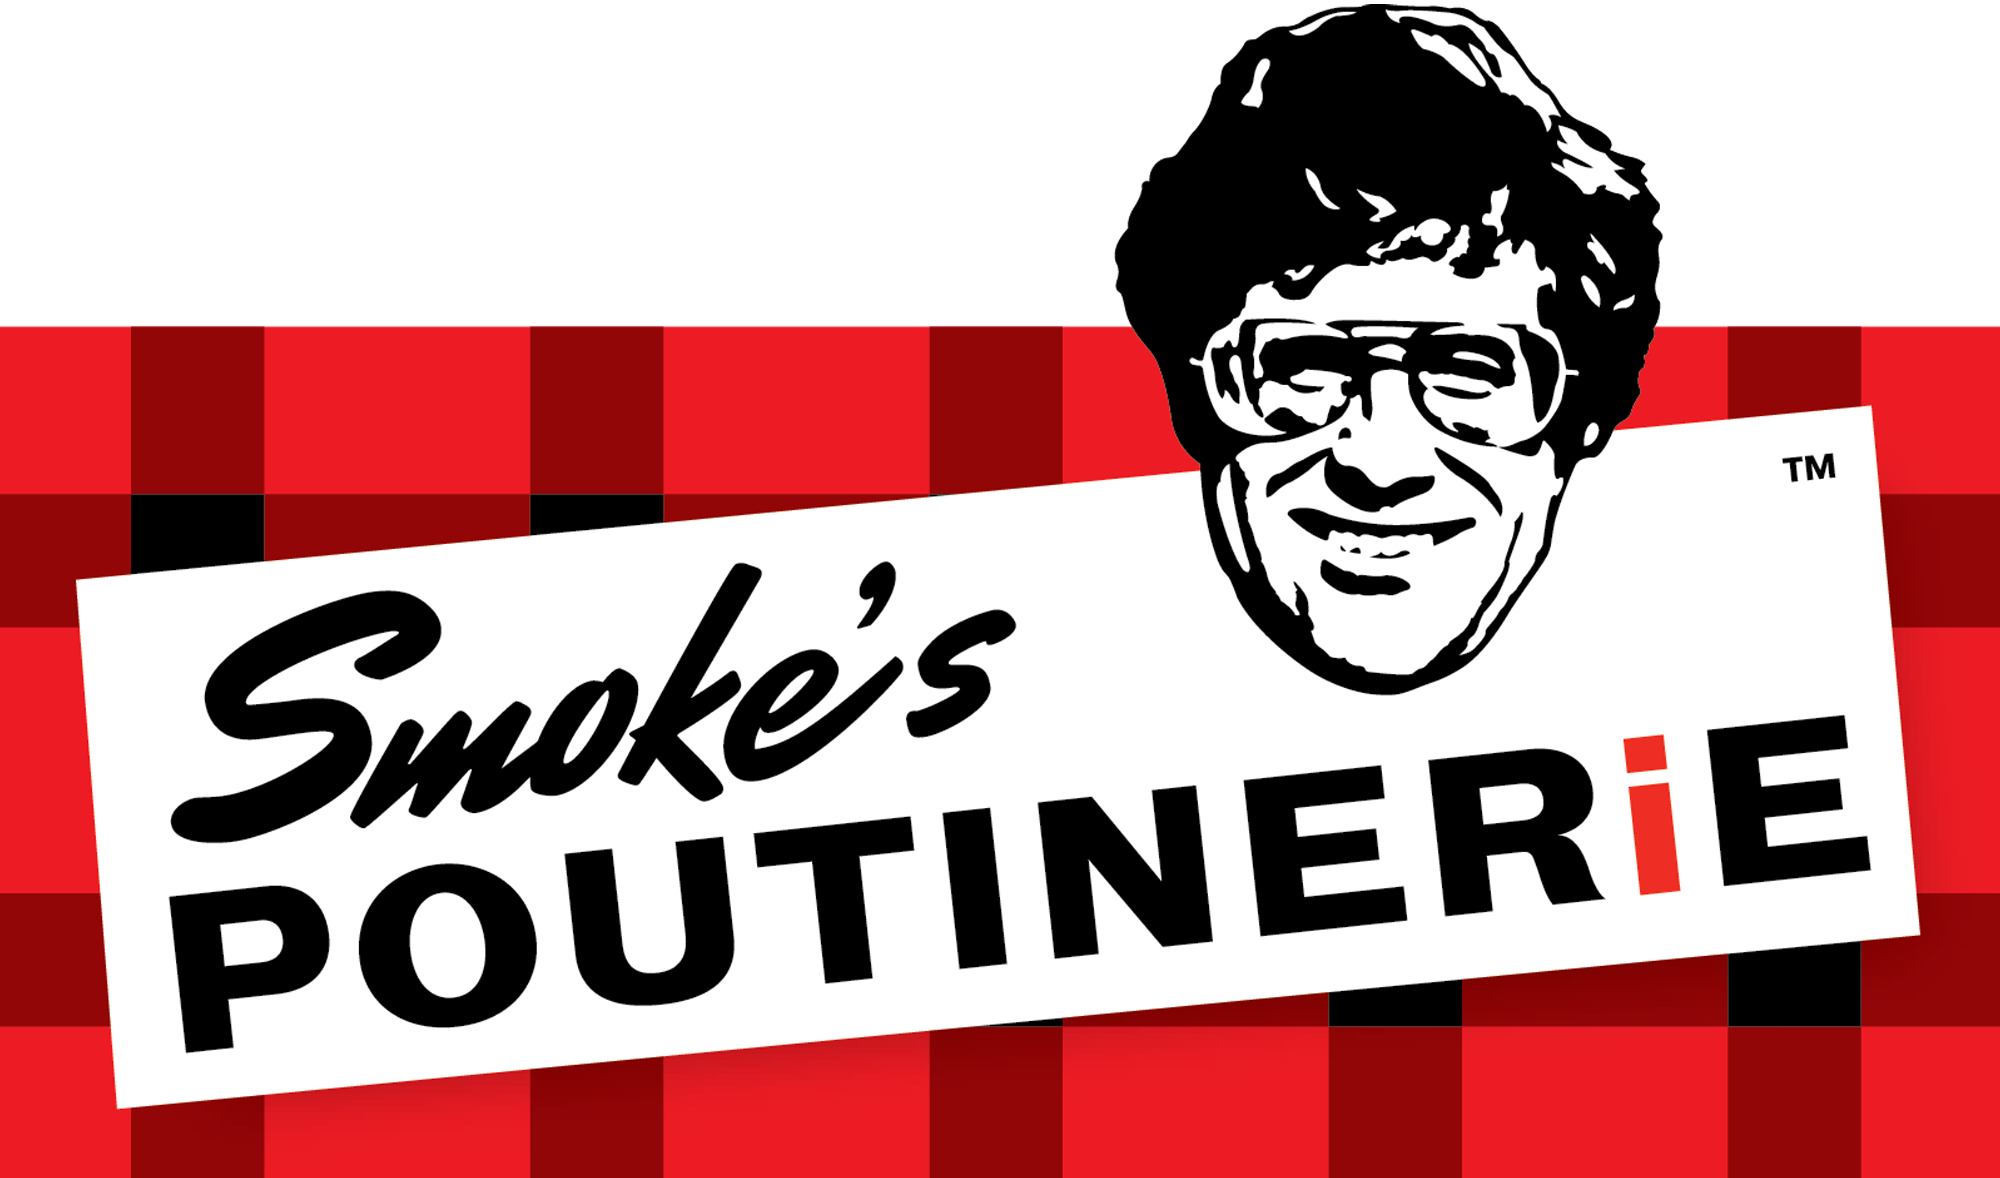 Smoke's Poutinerie logo